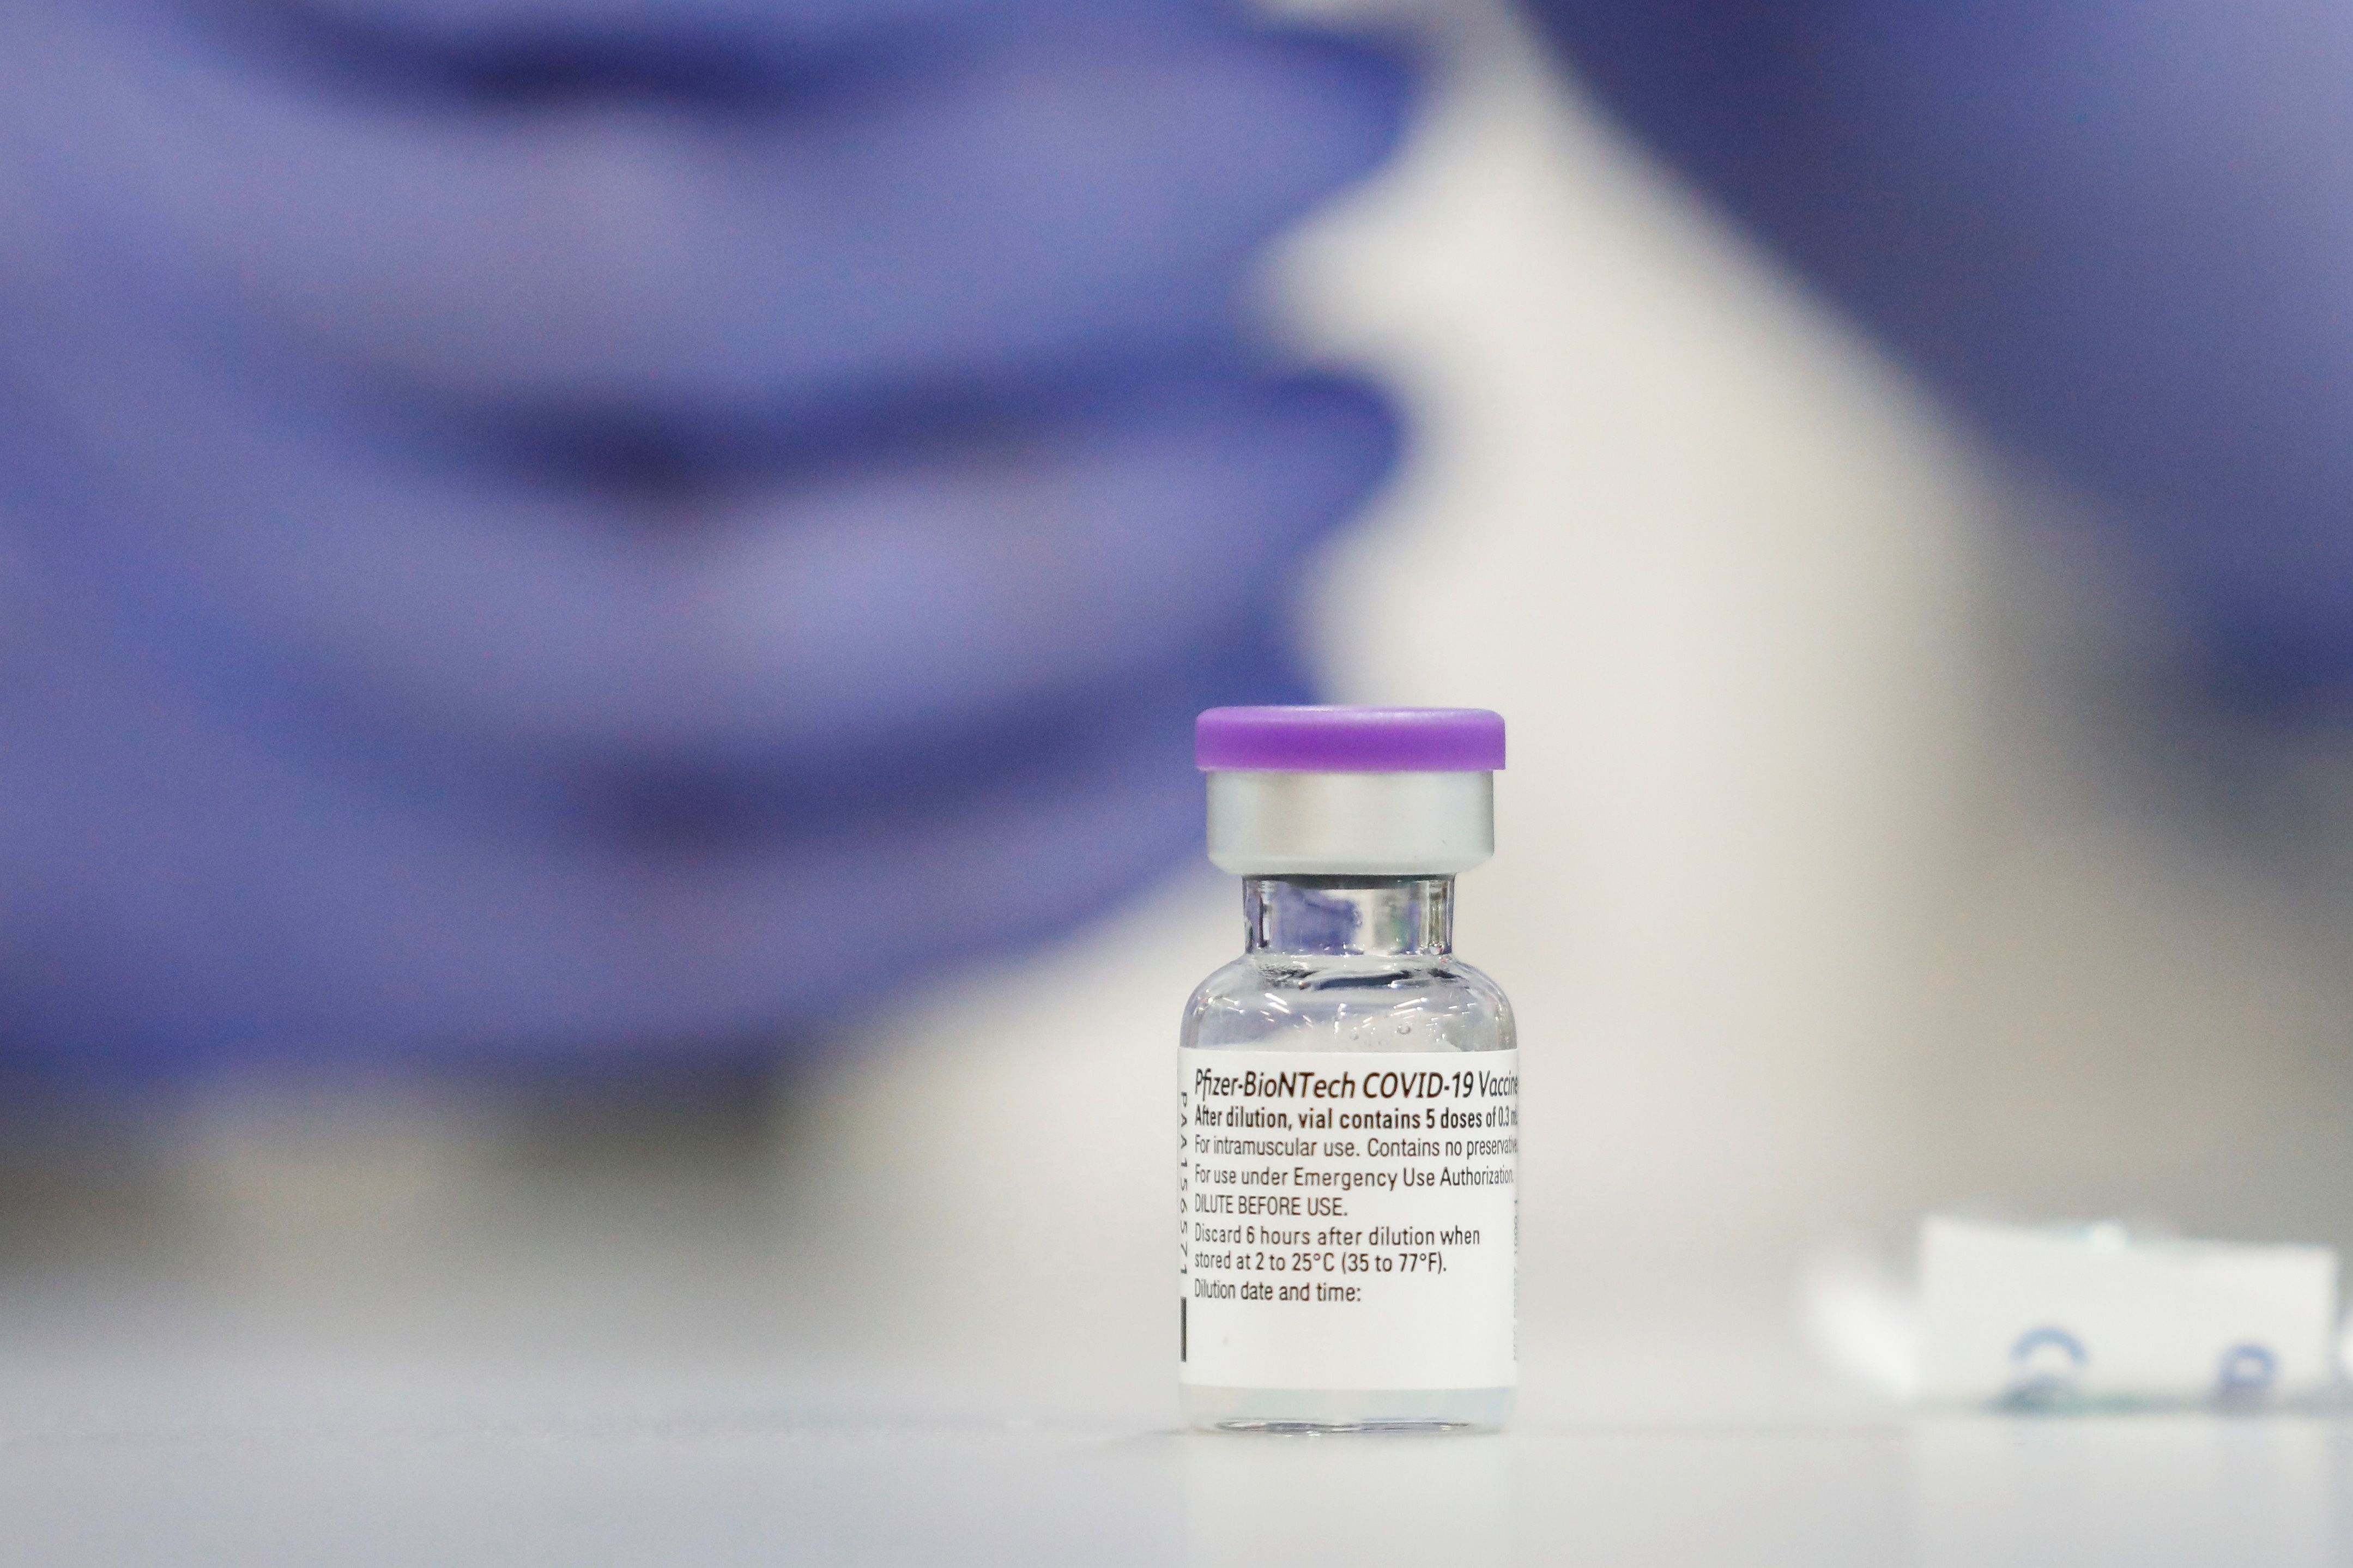 El estudio sobre la eficacia del desarrollo de Pfizer y BioNTech se realizó en Israel, un país "campeón mundial" de vacunación contra el coronavirus.